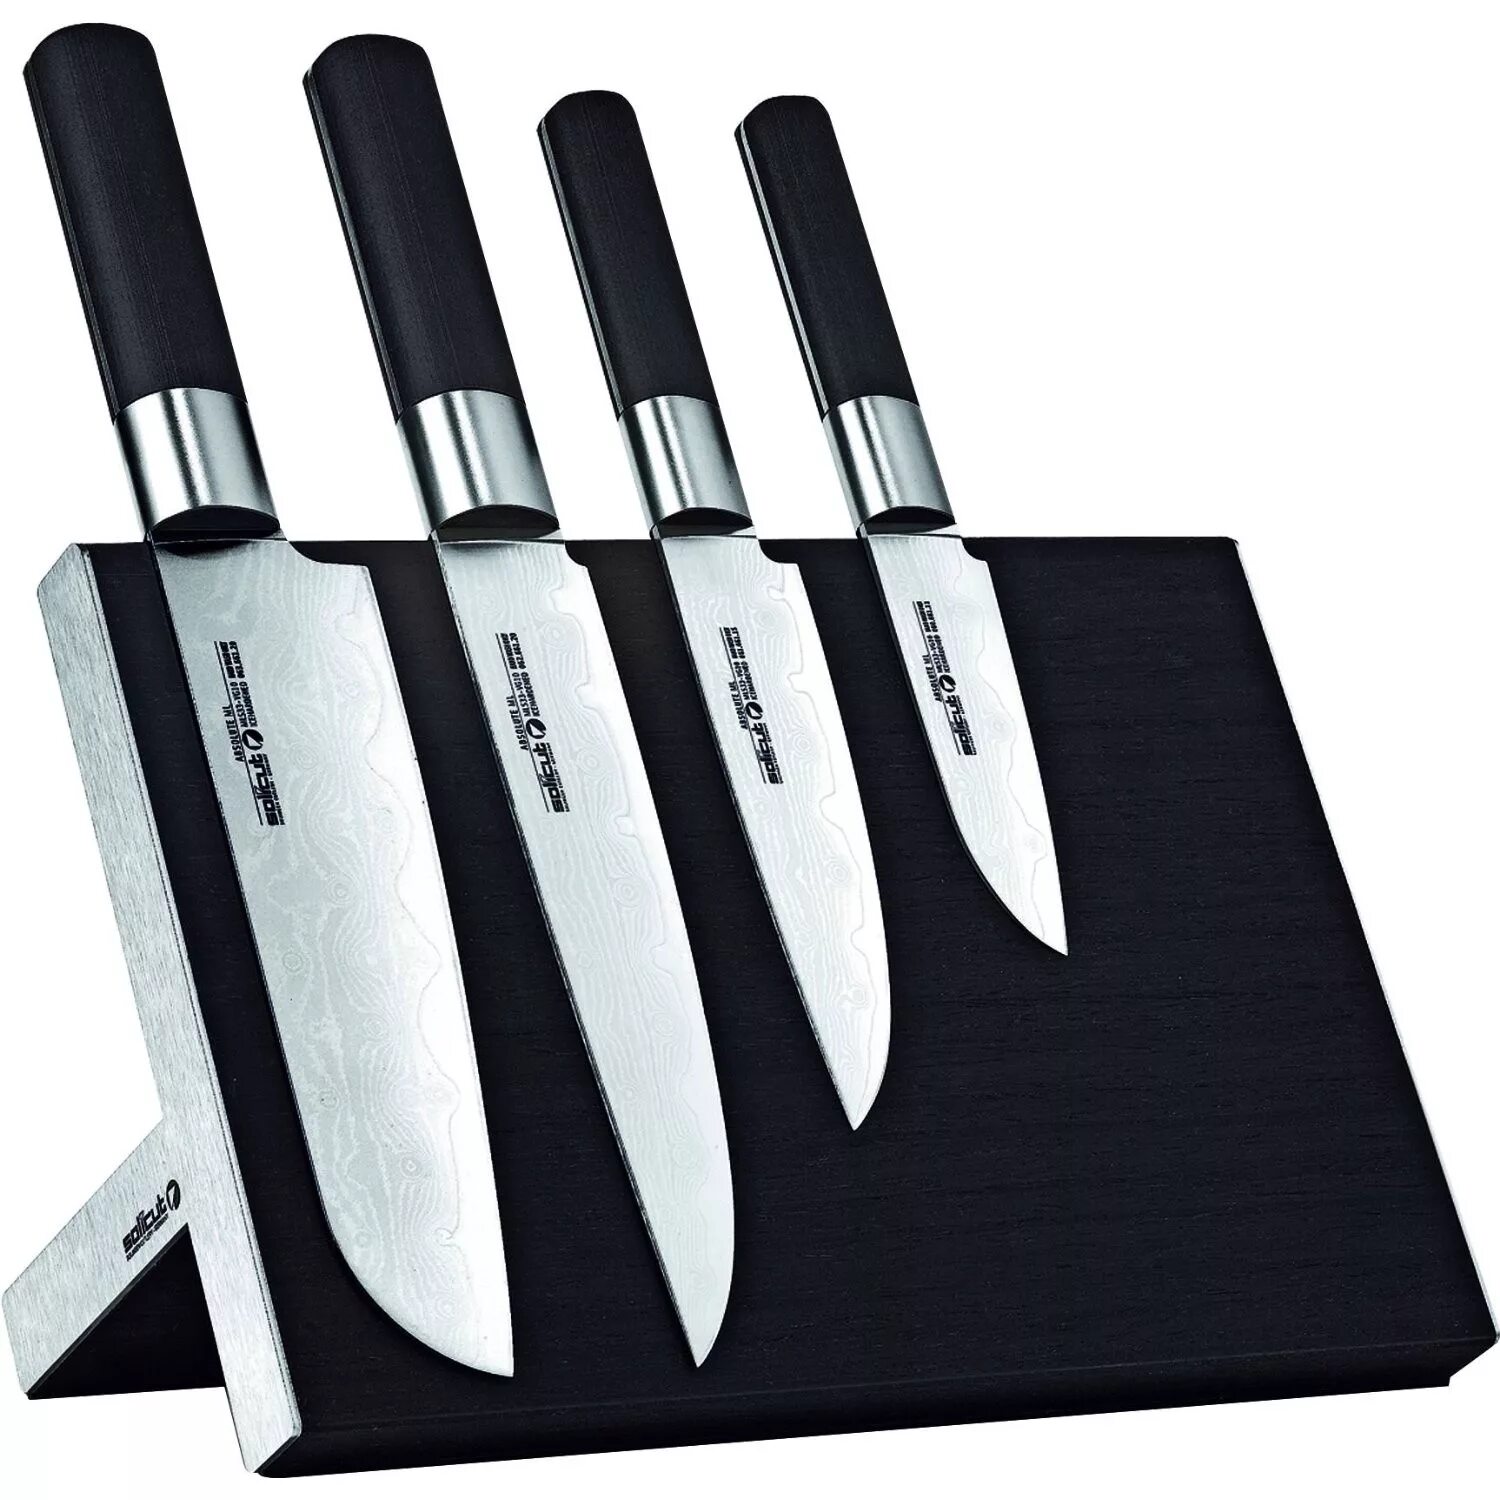 Кухонный нож. Набор ножей для кухни. Дизайнерские кухонные ножи. Нажми куханые.